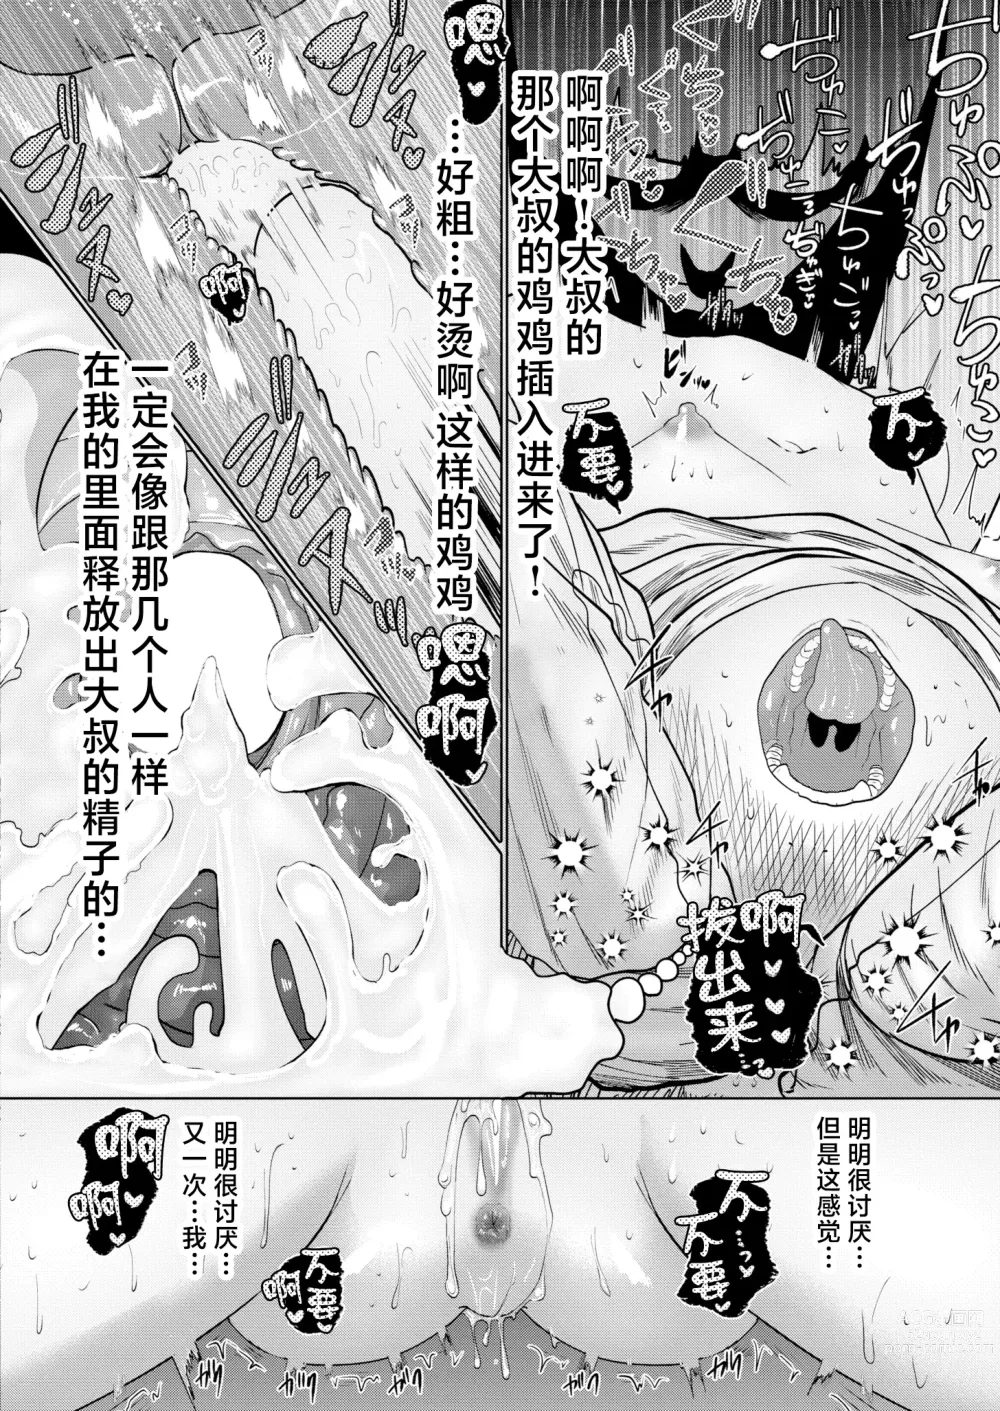 Page 144 of manga ねーうしとらうー! #1-5